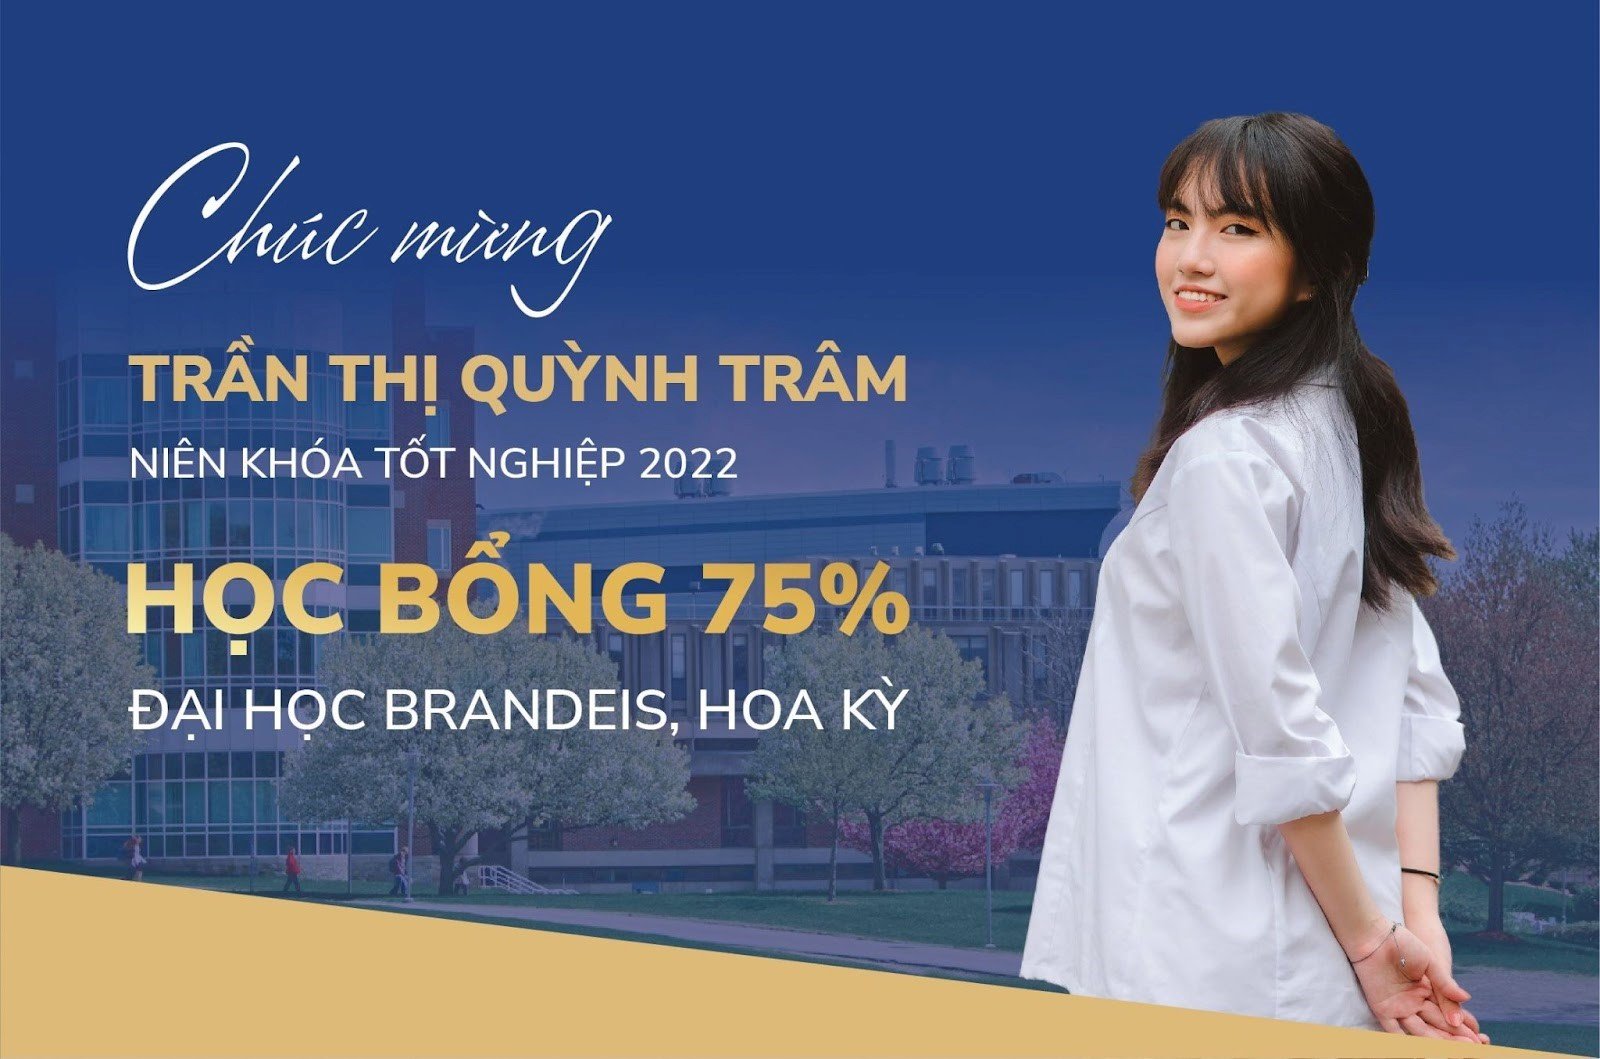 Vinser Trần Thị Quỳnh Trâm – Trúng tuyển Đại học danh giá Mỹ với học bổng 75%, lựa chọn chuyên ngành Kinh tế học và Khoa học máy tính